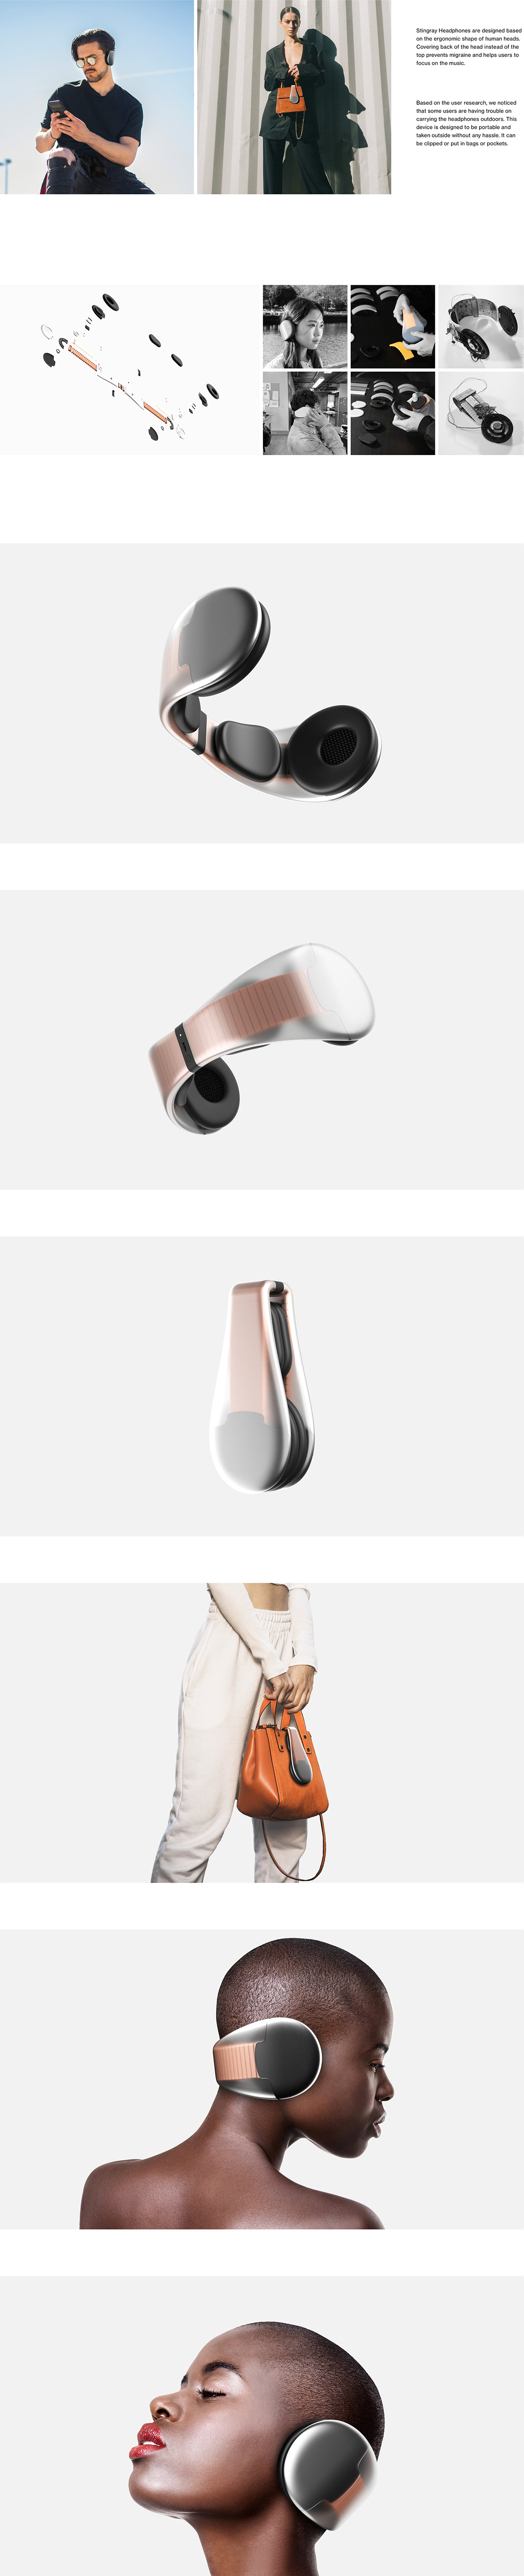 3D design headphone design headphones industrial industrial design  modern product product design  Render